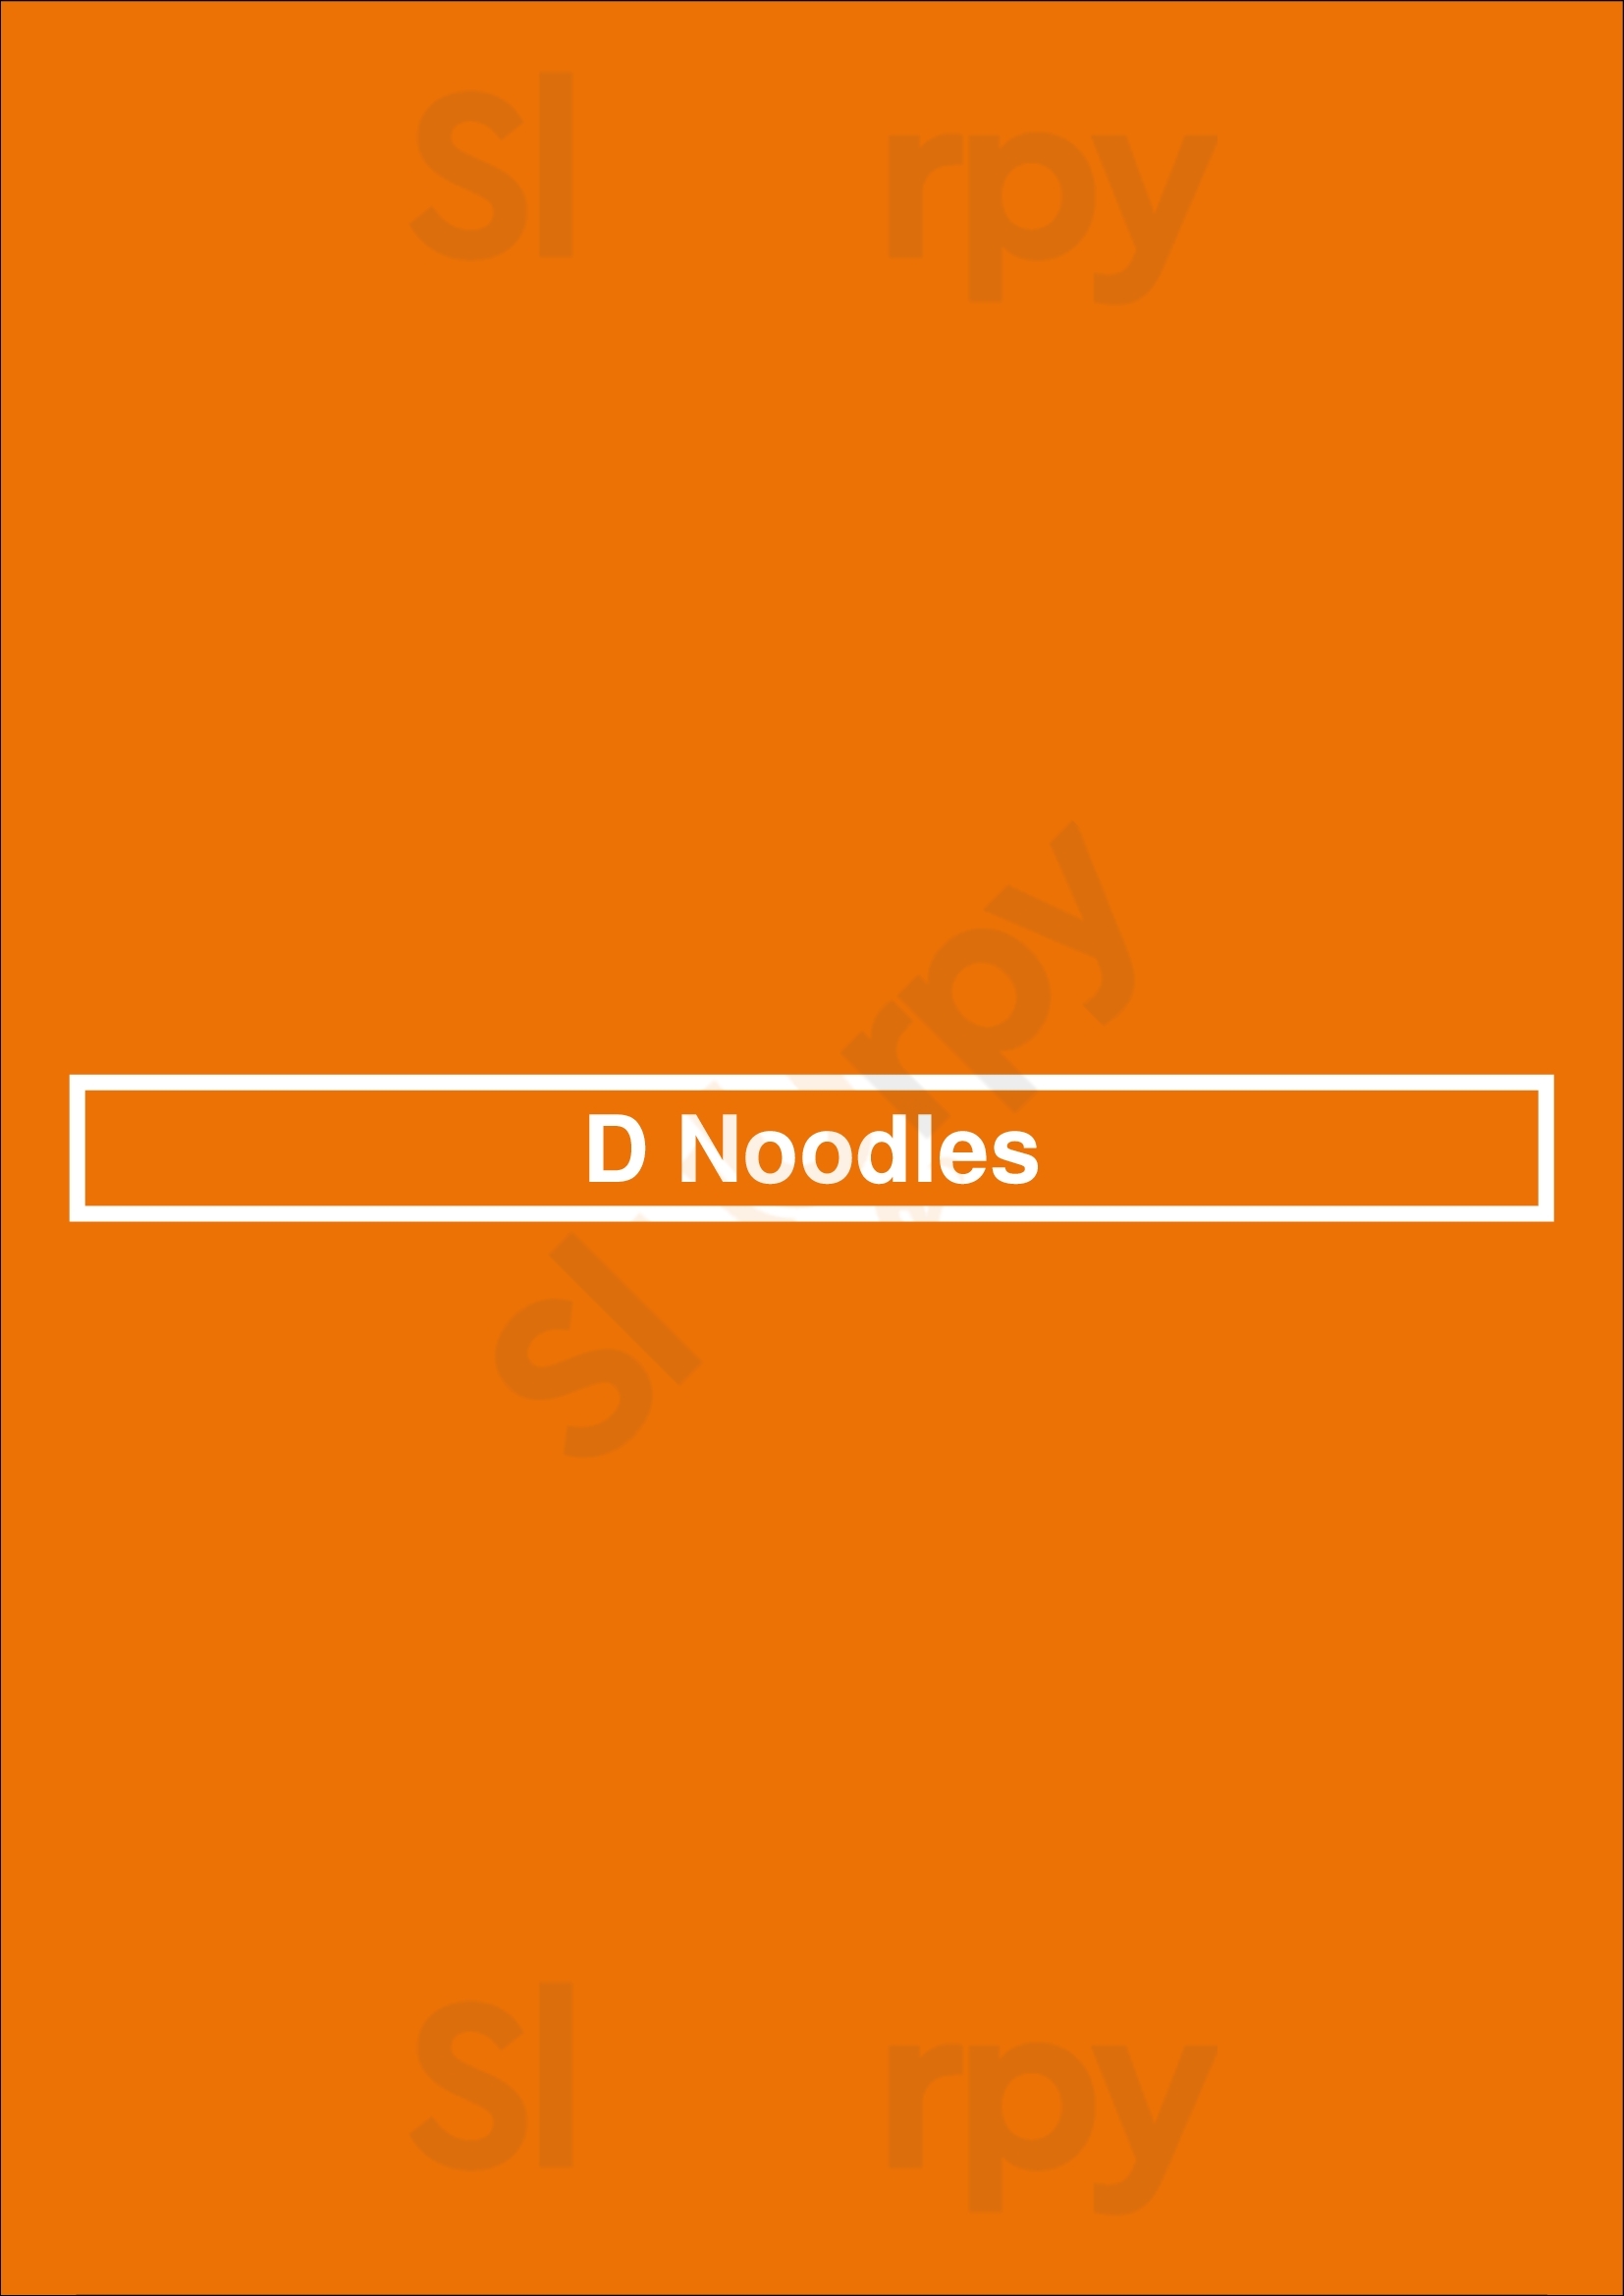 D Noodles Paris Menu - 1